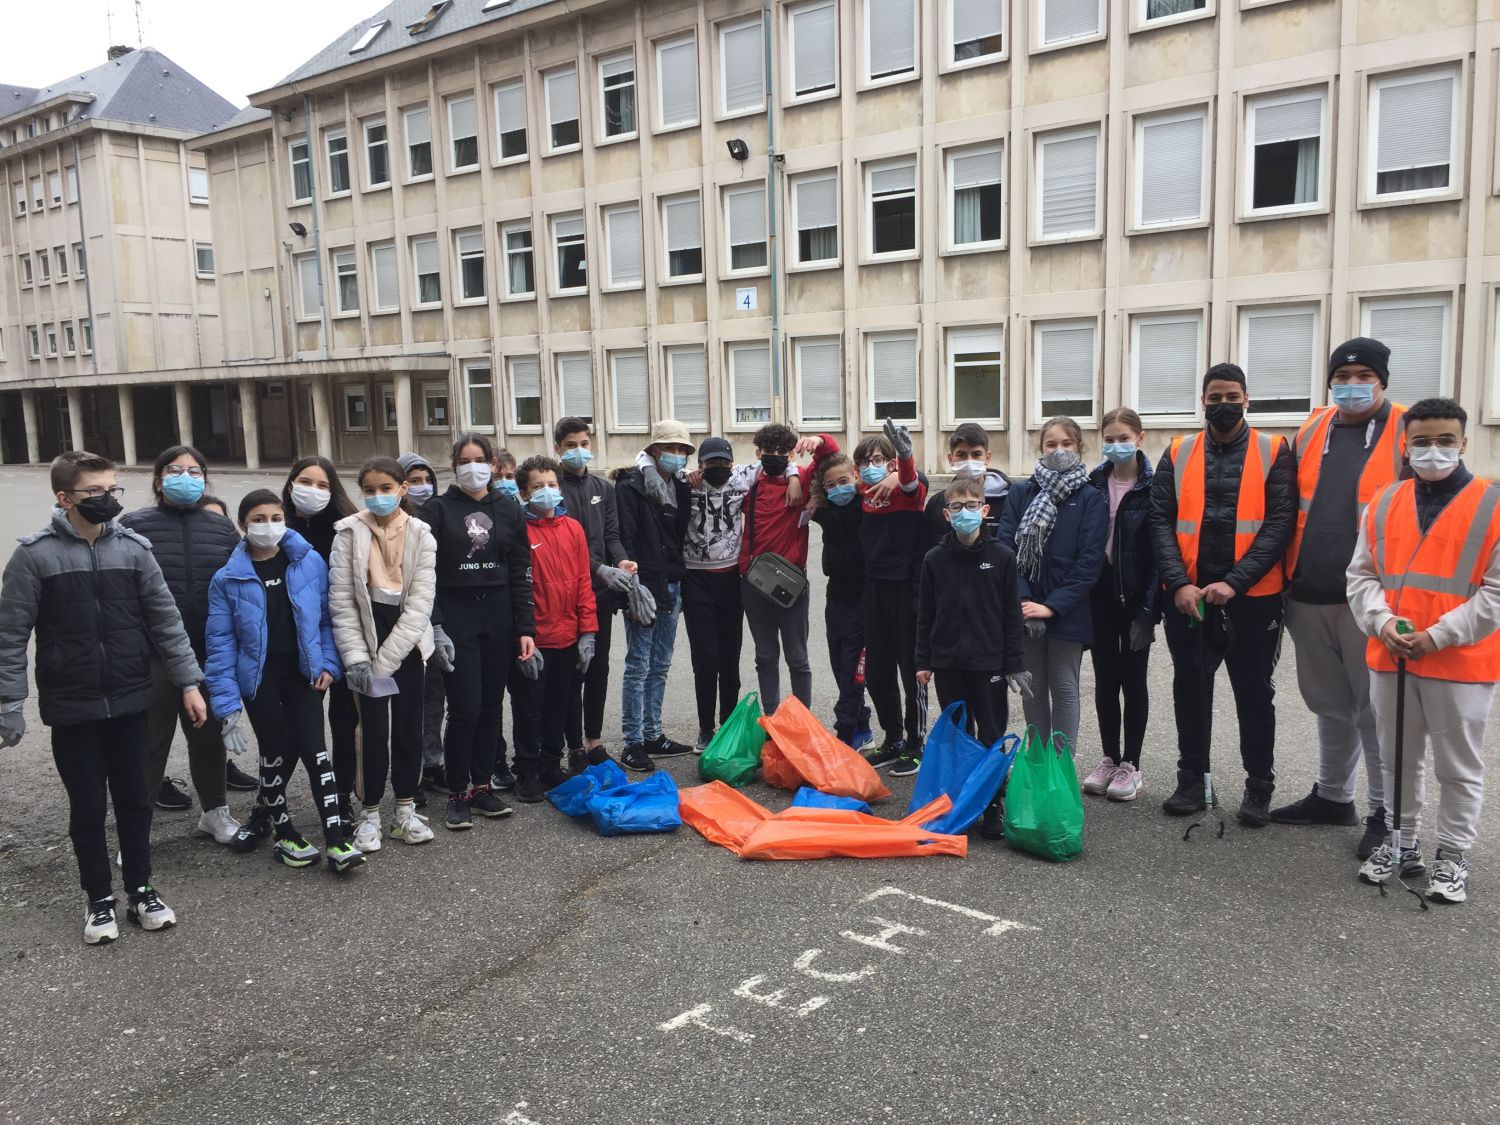 Des dizaines de kilos de déchets ramassés à la cité scolaire <br />
Jean Moulin de Forbach